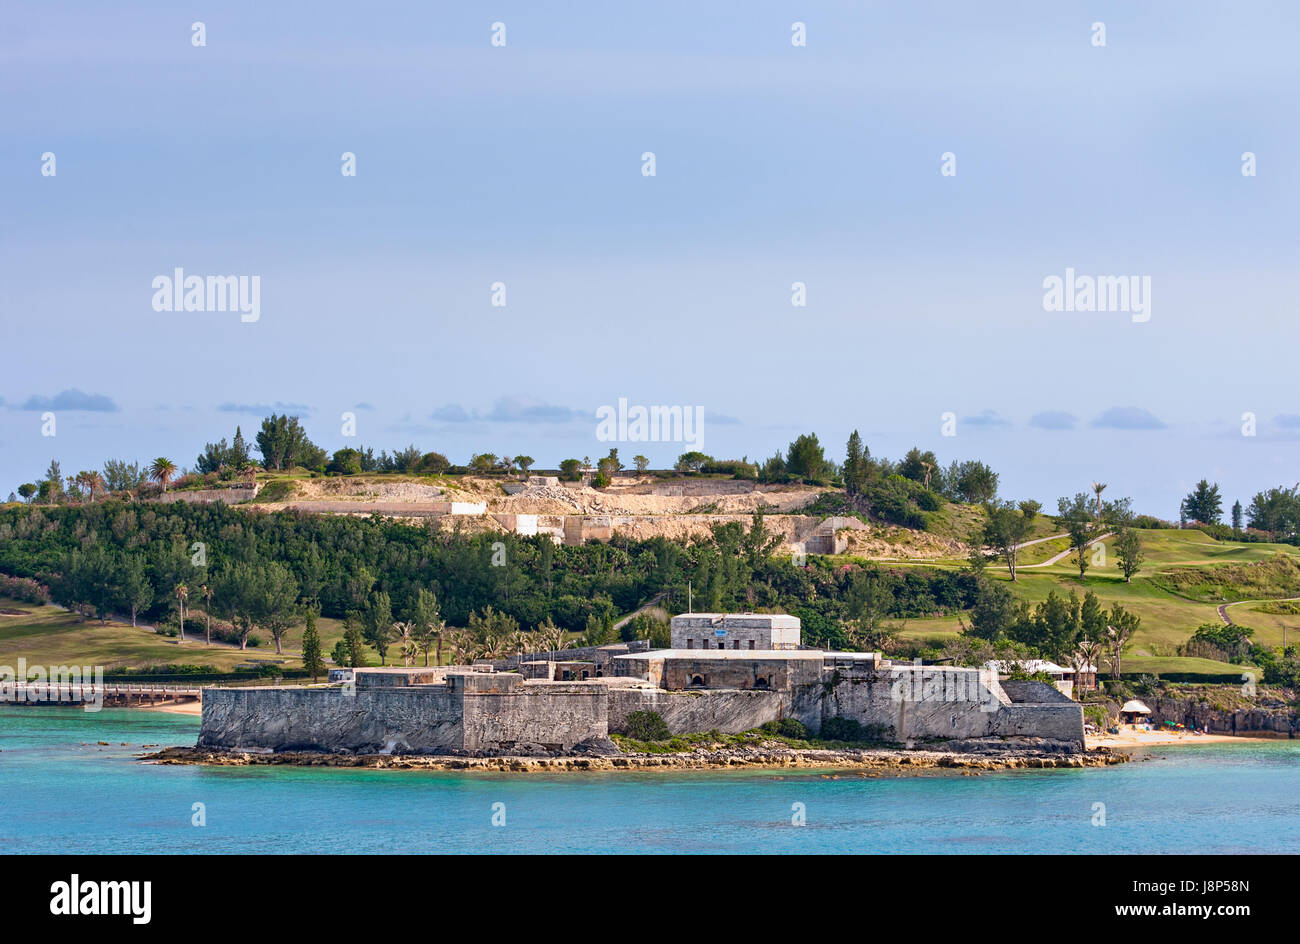 saint, fortification, landmark, bermuda, salt water, sea, ocean, water, blue, Stock Photo